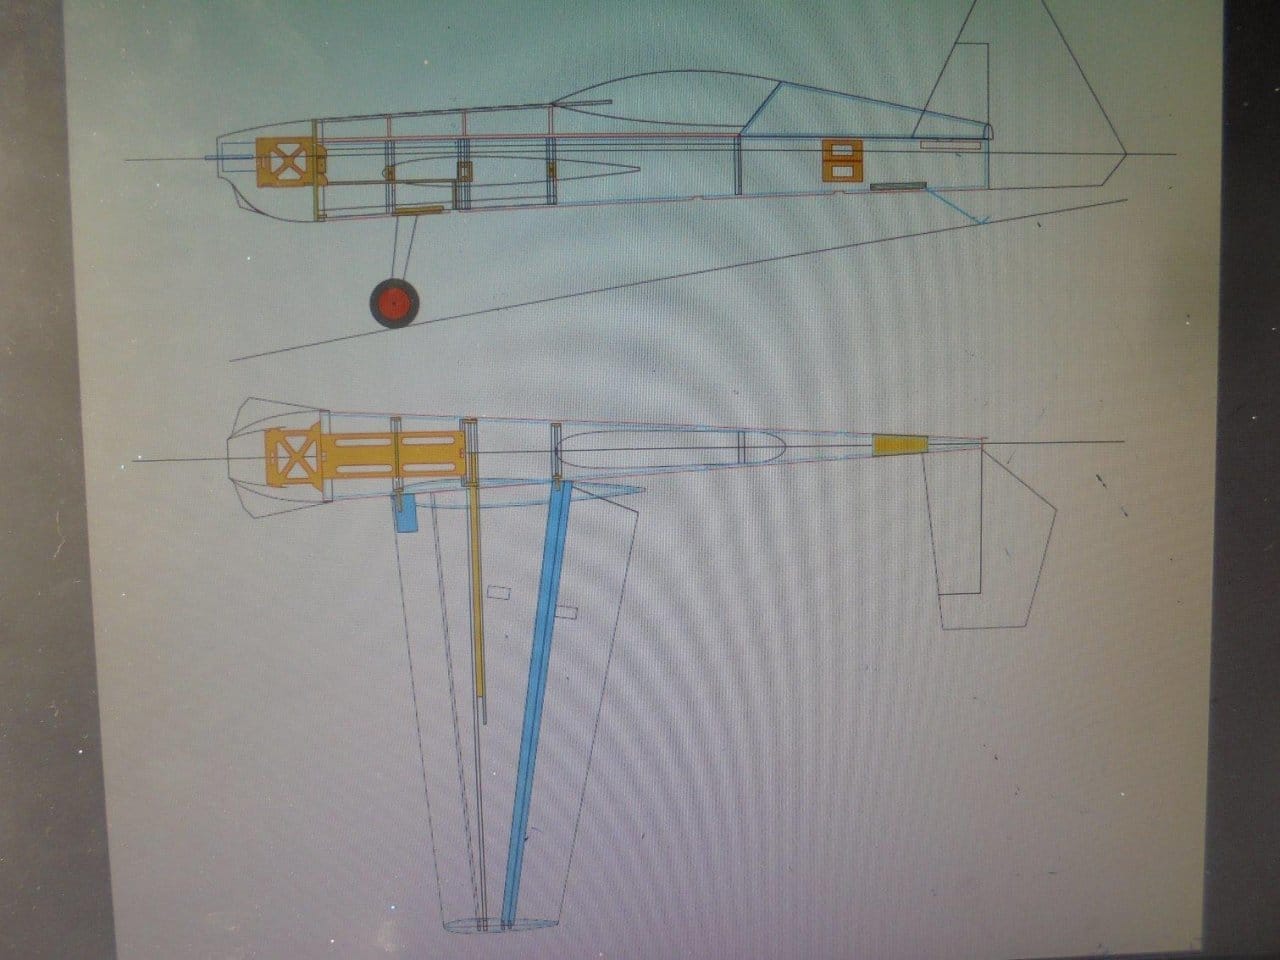 Пилотажная модель «Vertiga 3M»